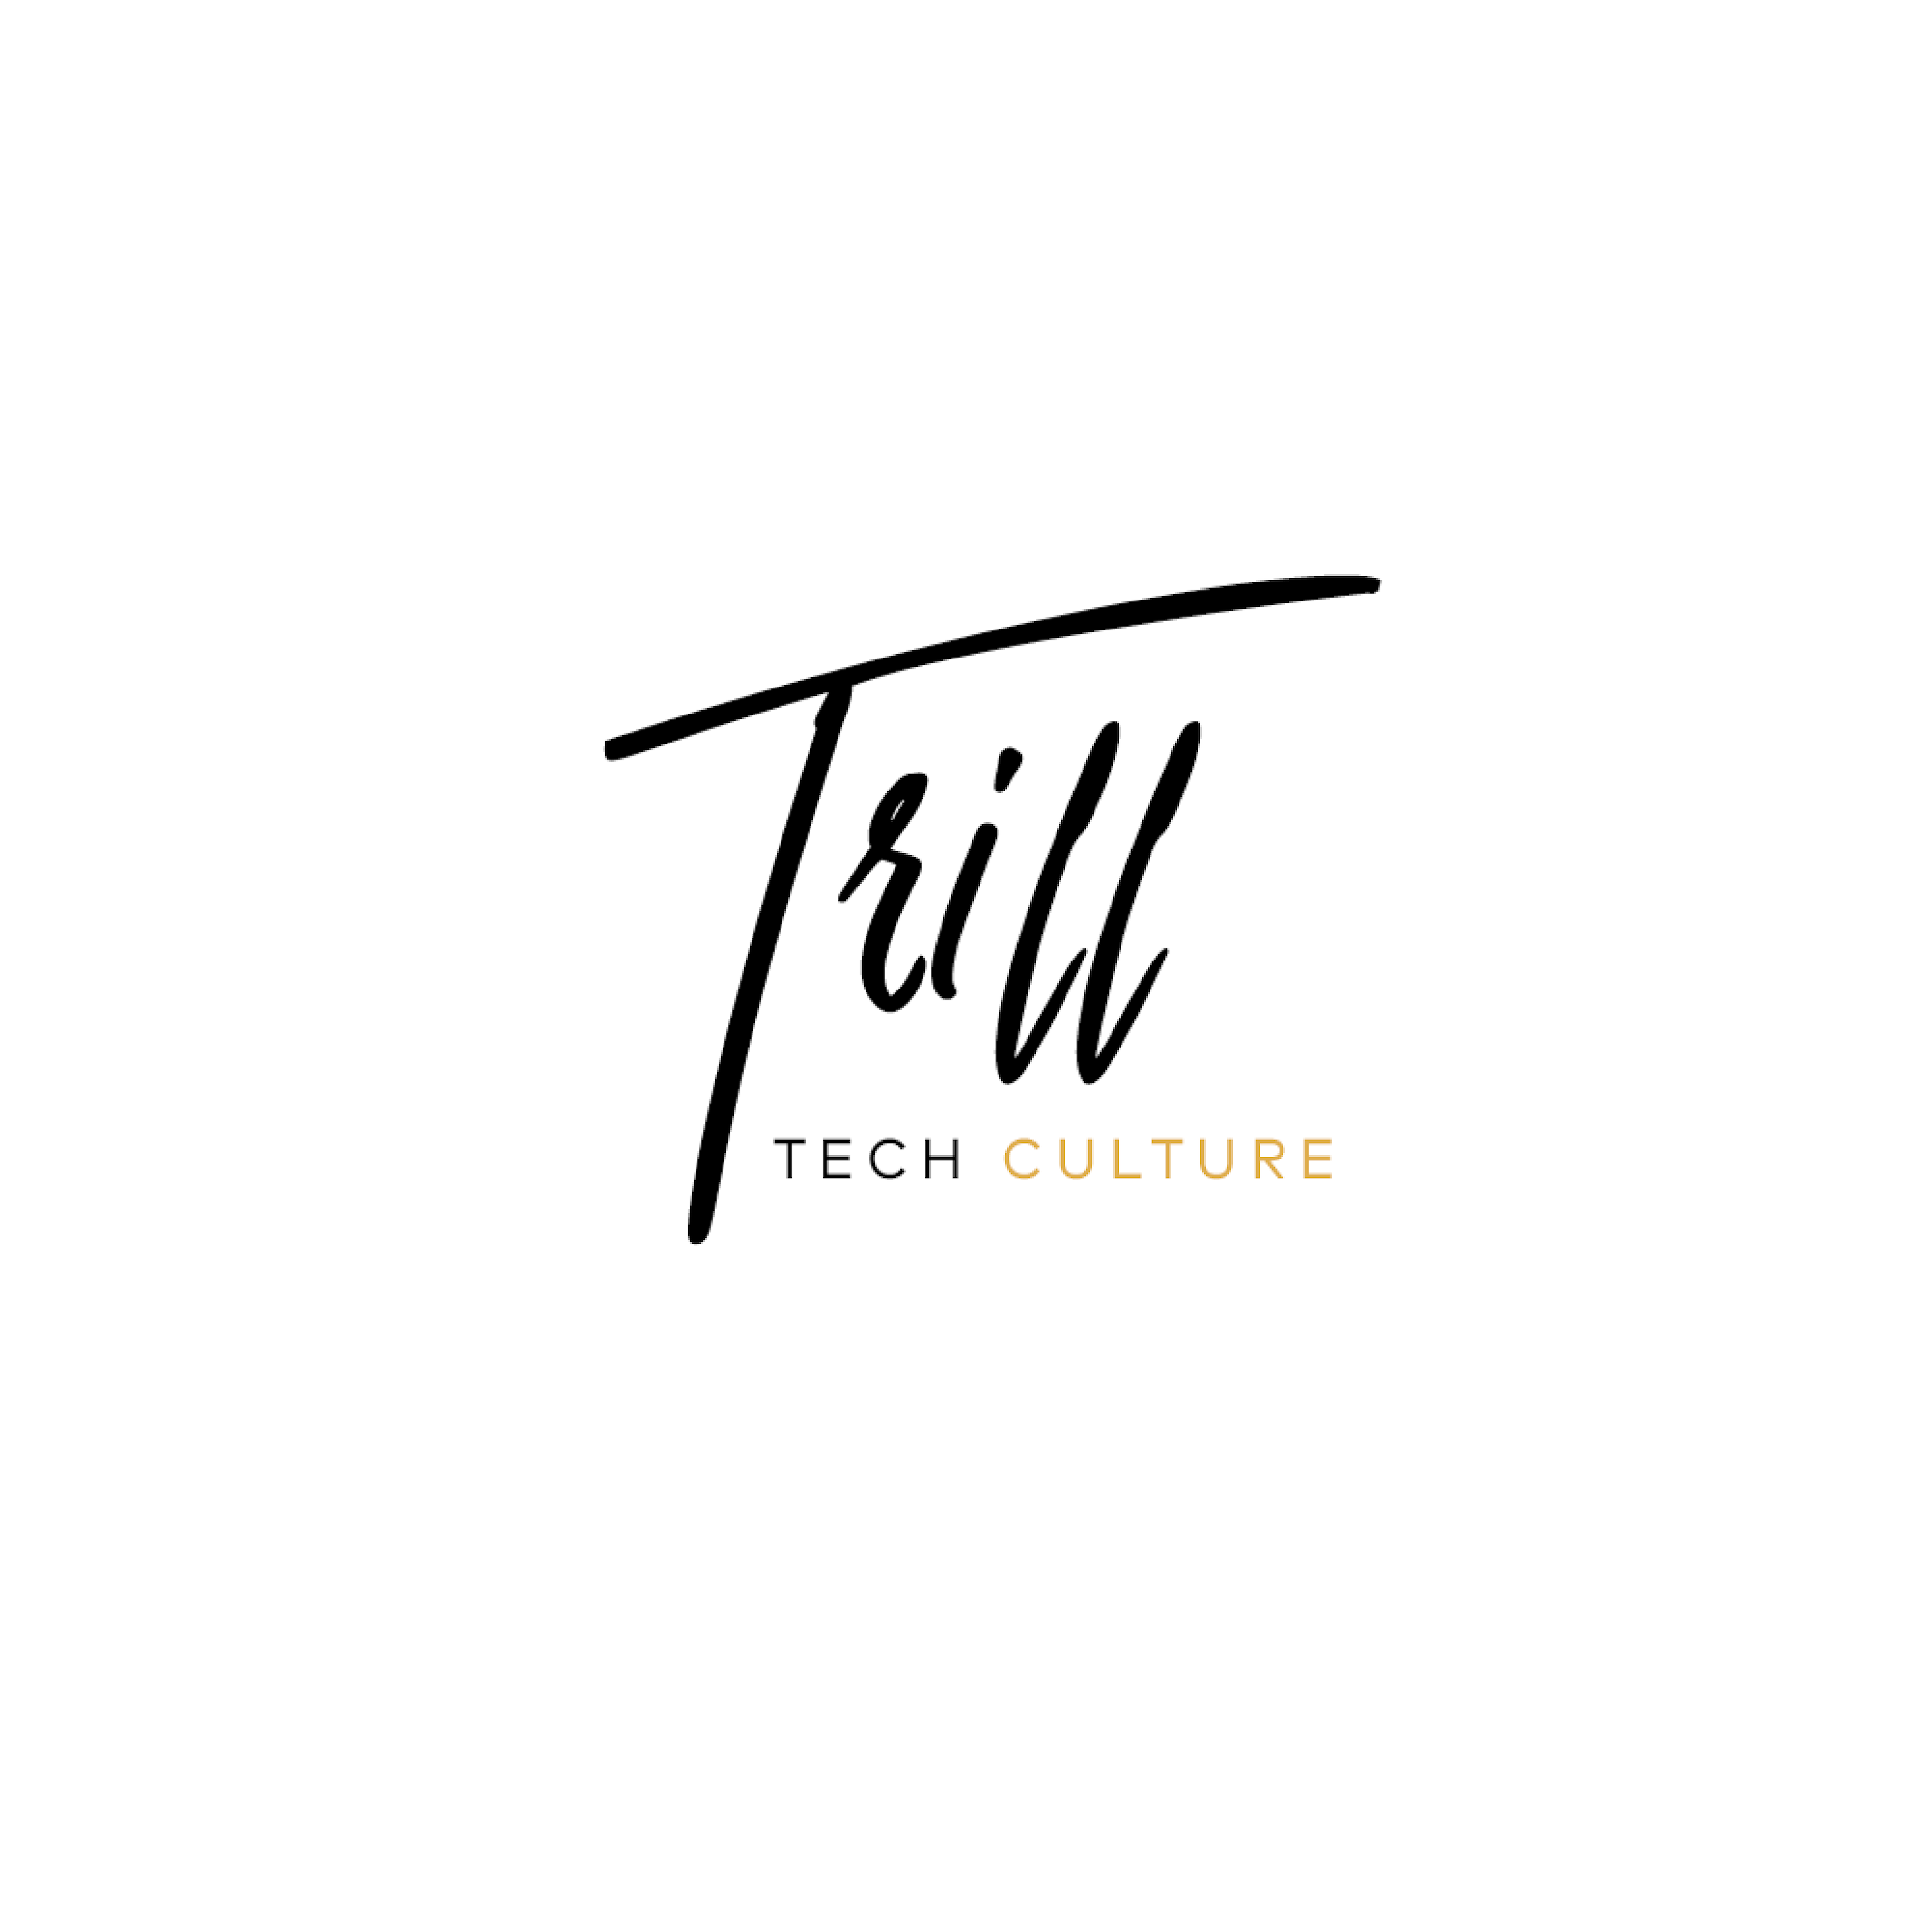 Trill Logo - Trill Tech Culture